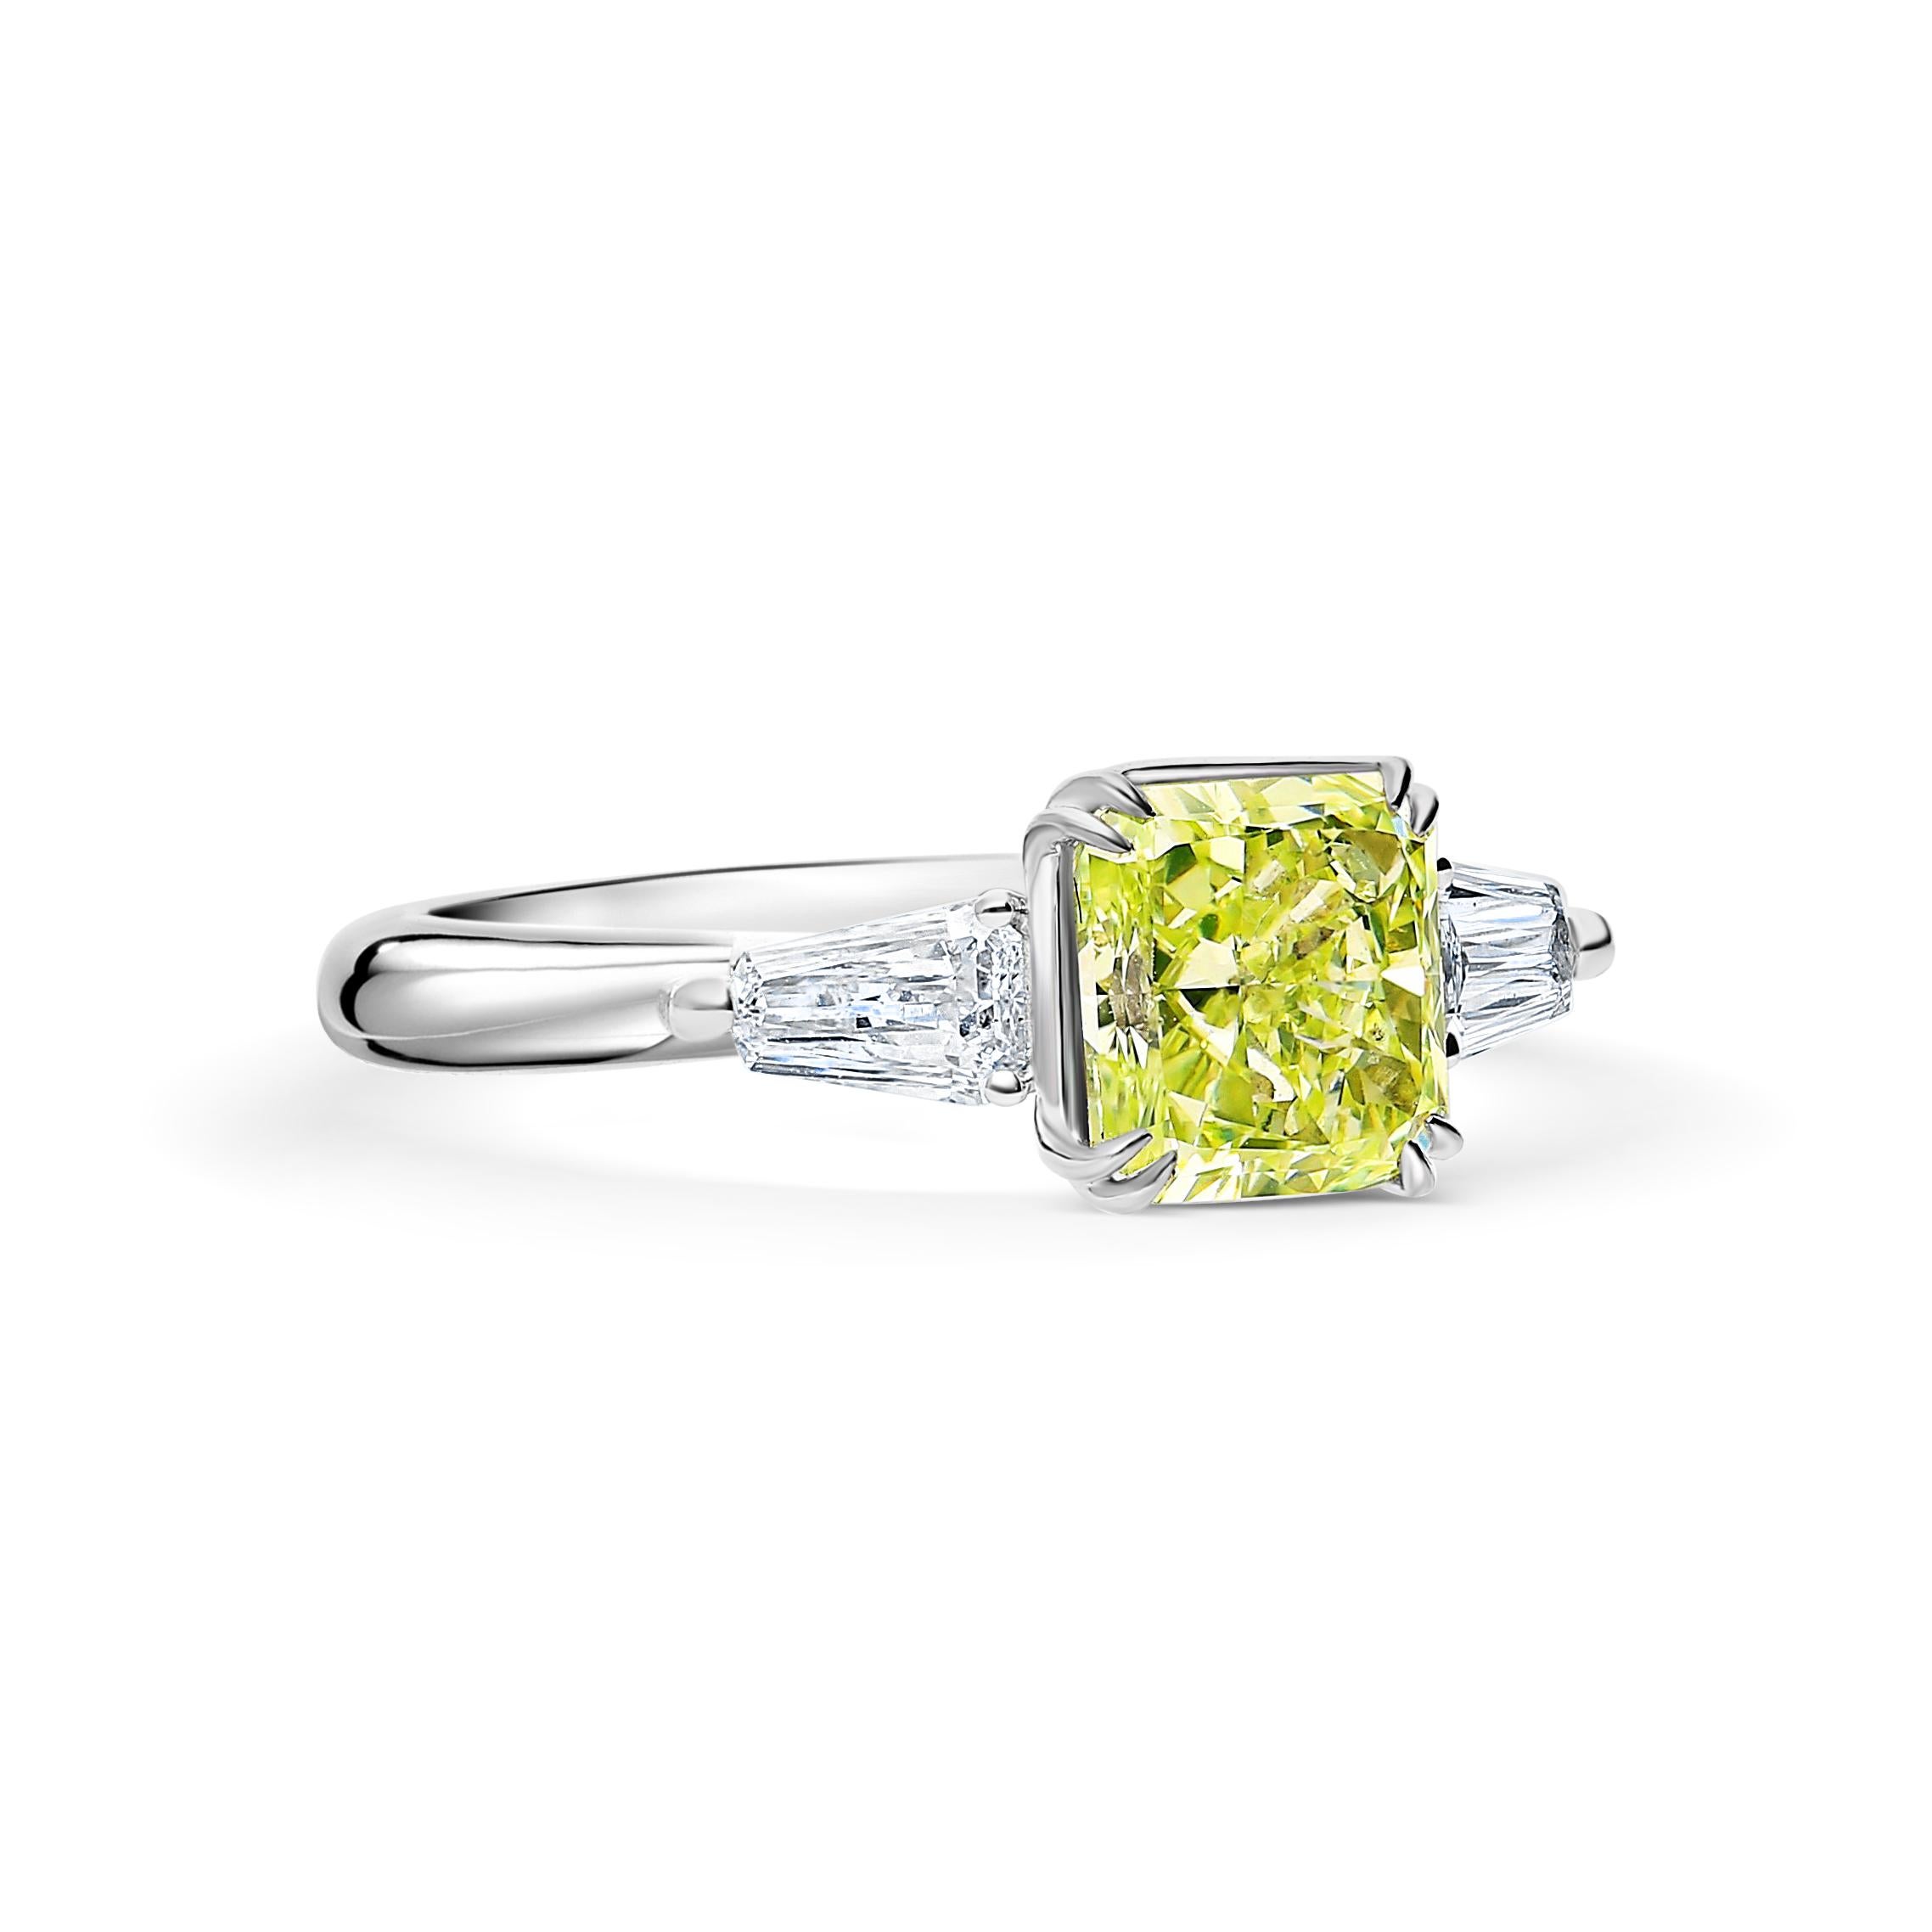 GIA-zertifizierter 2,22-Karat-Diamantring mit gelb-grünem Strahlenschliff und drei Steinen. Mit zwei lupenreinen, spitz zulaufenden Diamanten im Baguetteschliff. Der Mittelstein ist ein zertifizierter Fancy Yellow-Green, was bedeutet, dass die